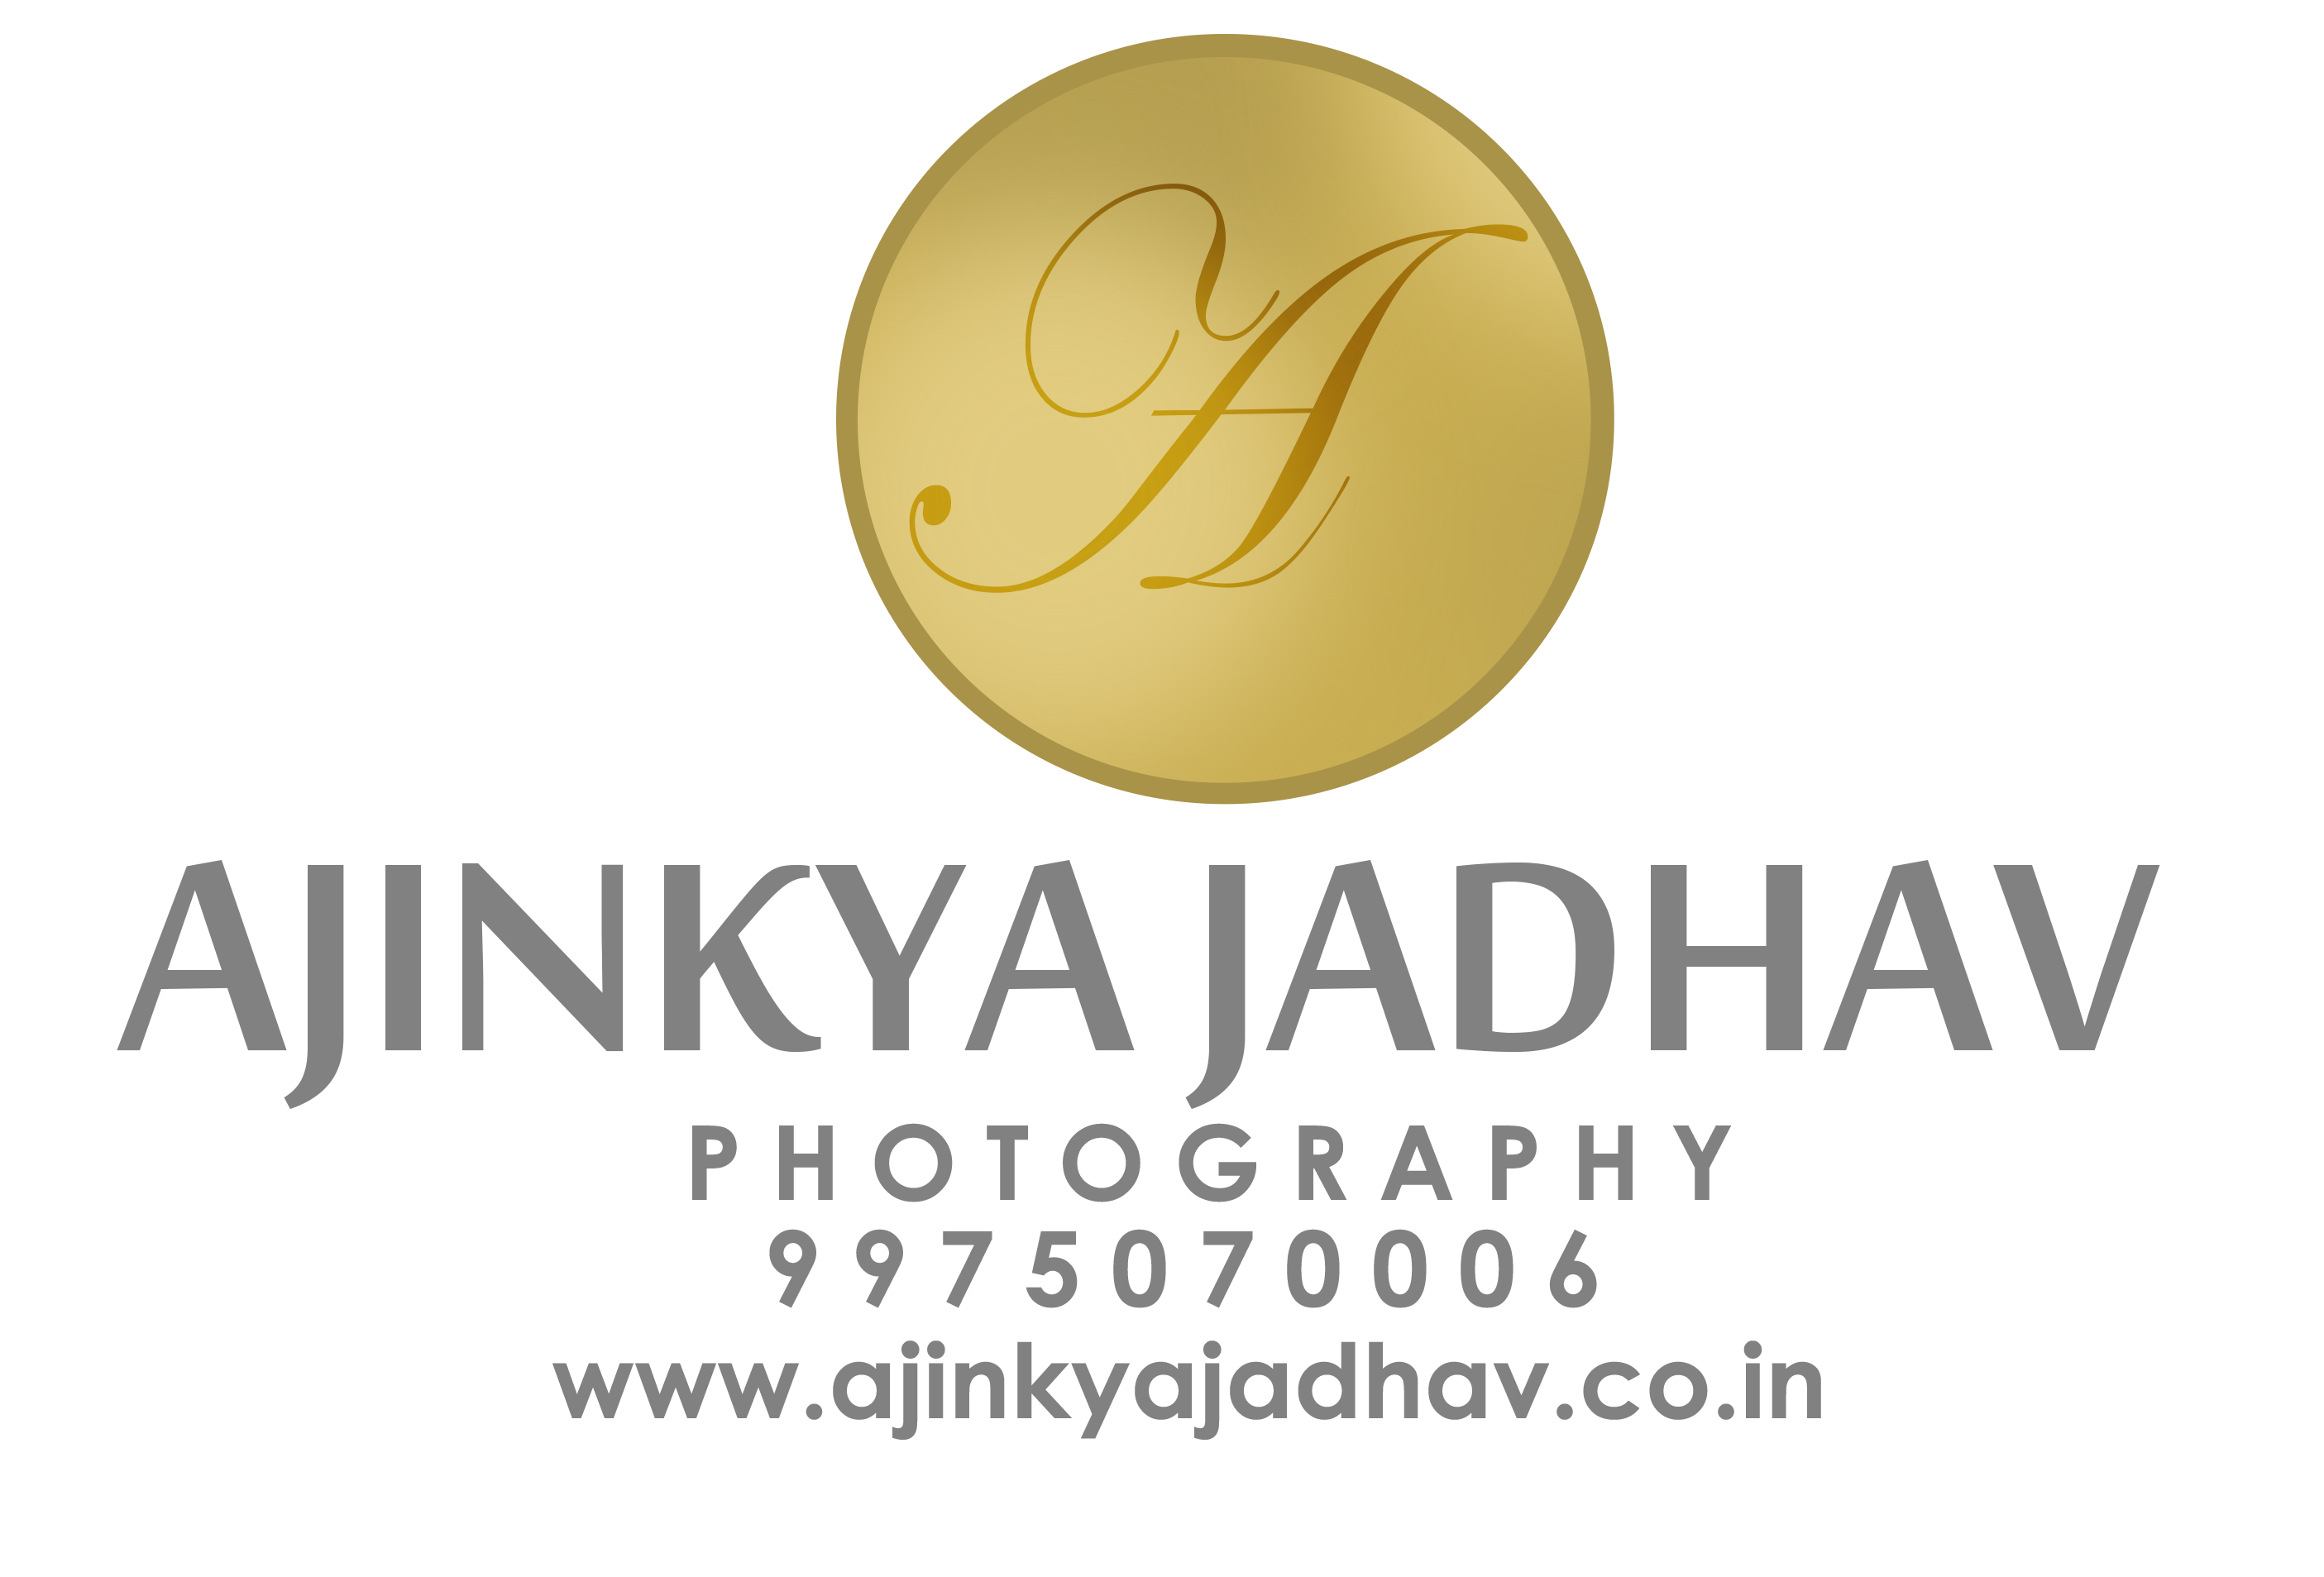 Ajinkya Jadhav Photography - Logo